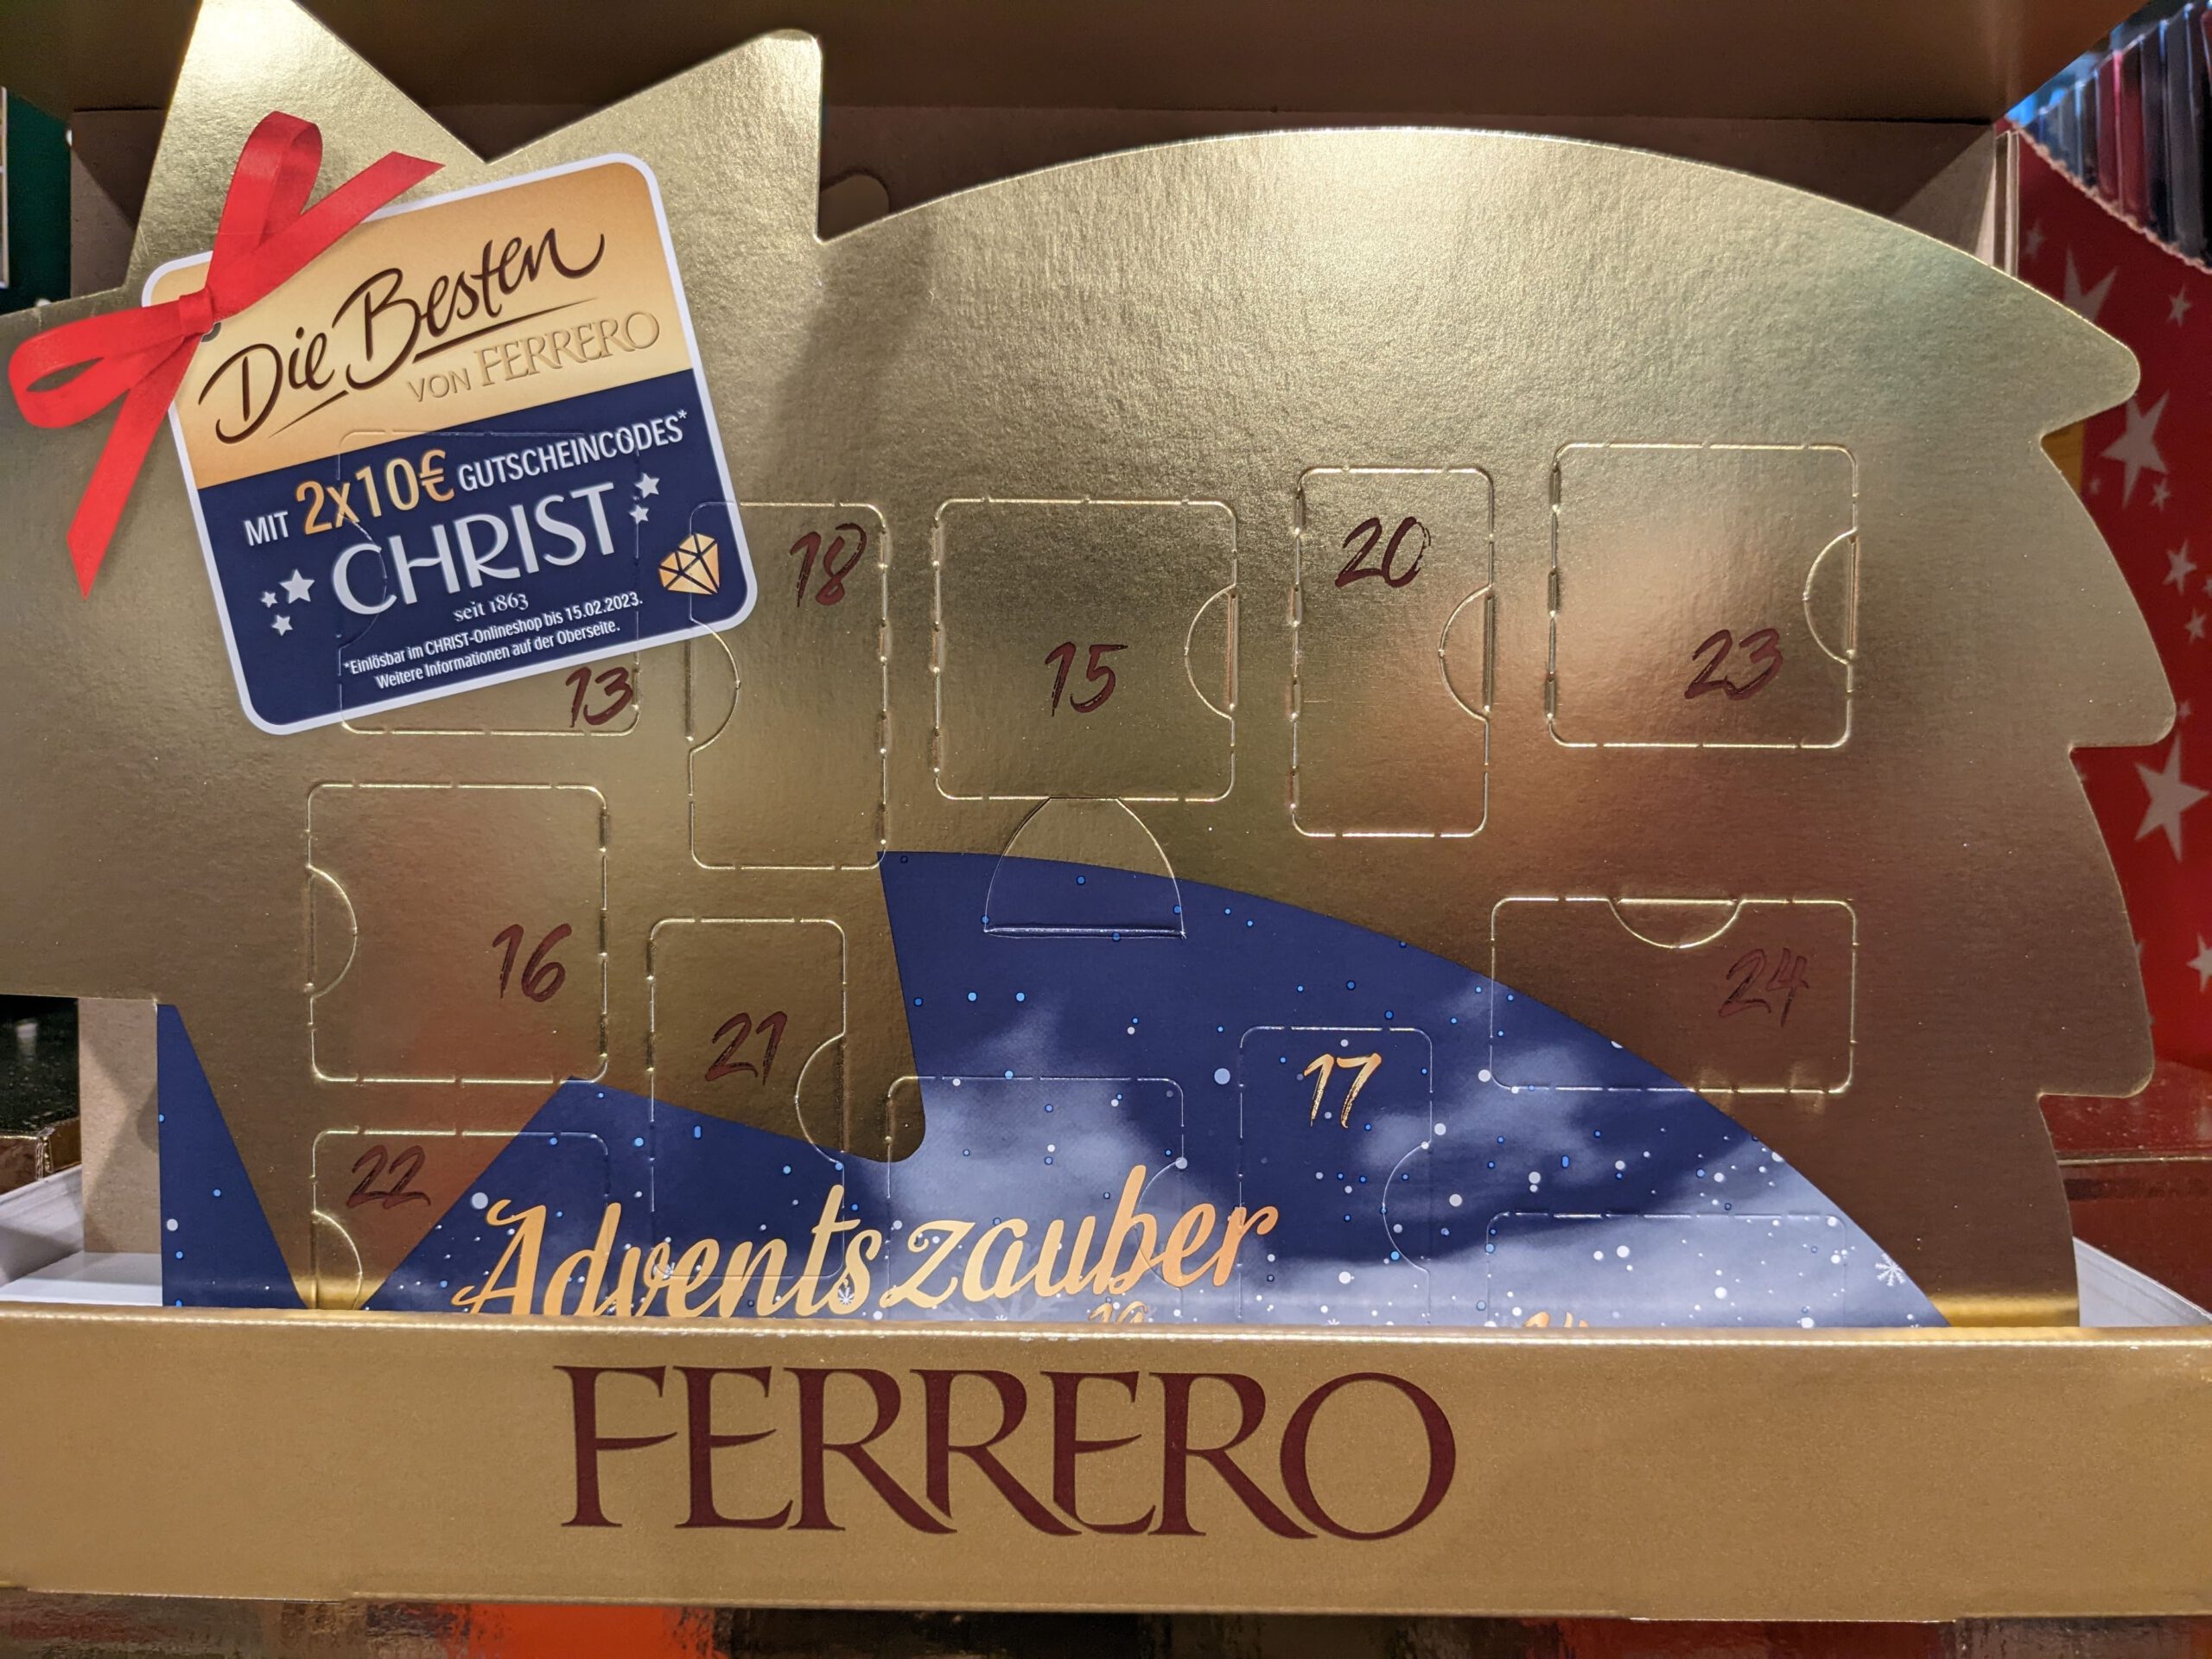 Die Besten von Ferrero Adventszauber: 2x 10 € Christ Rabattgutschein gratis - Code eingeben